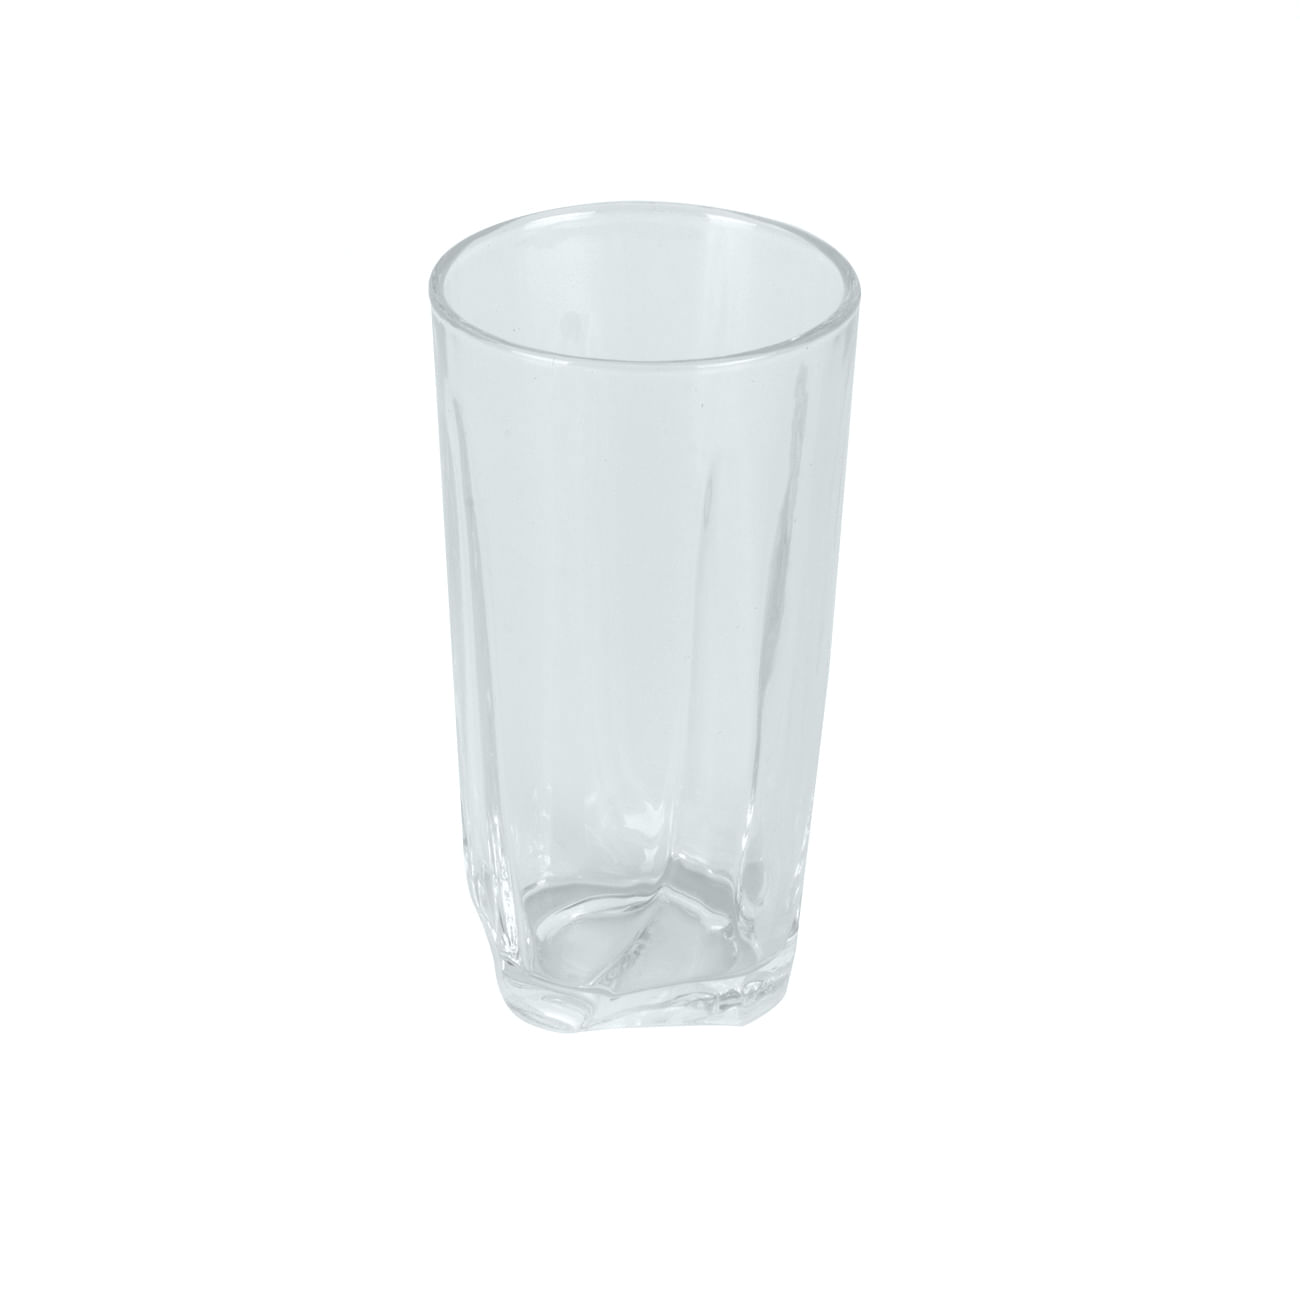 Diosa - Vasos de vidrios, diseño sencillo y elegante